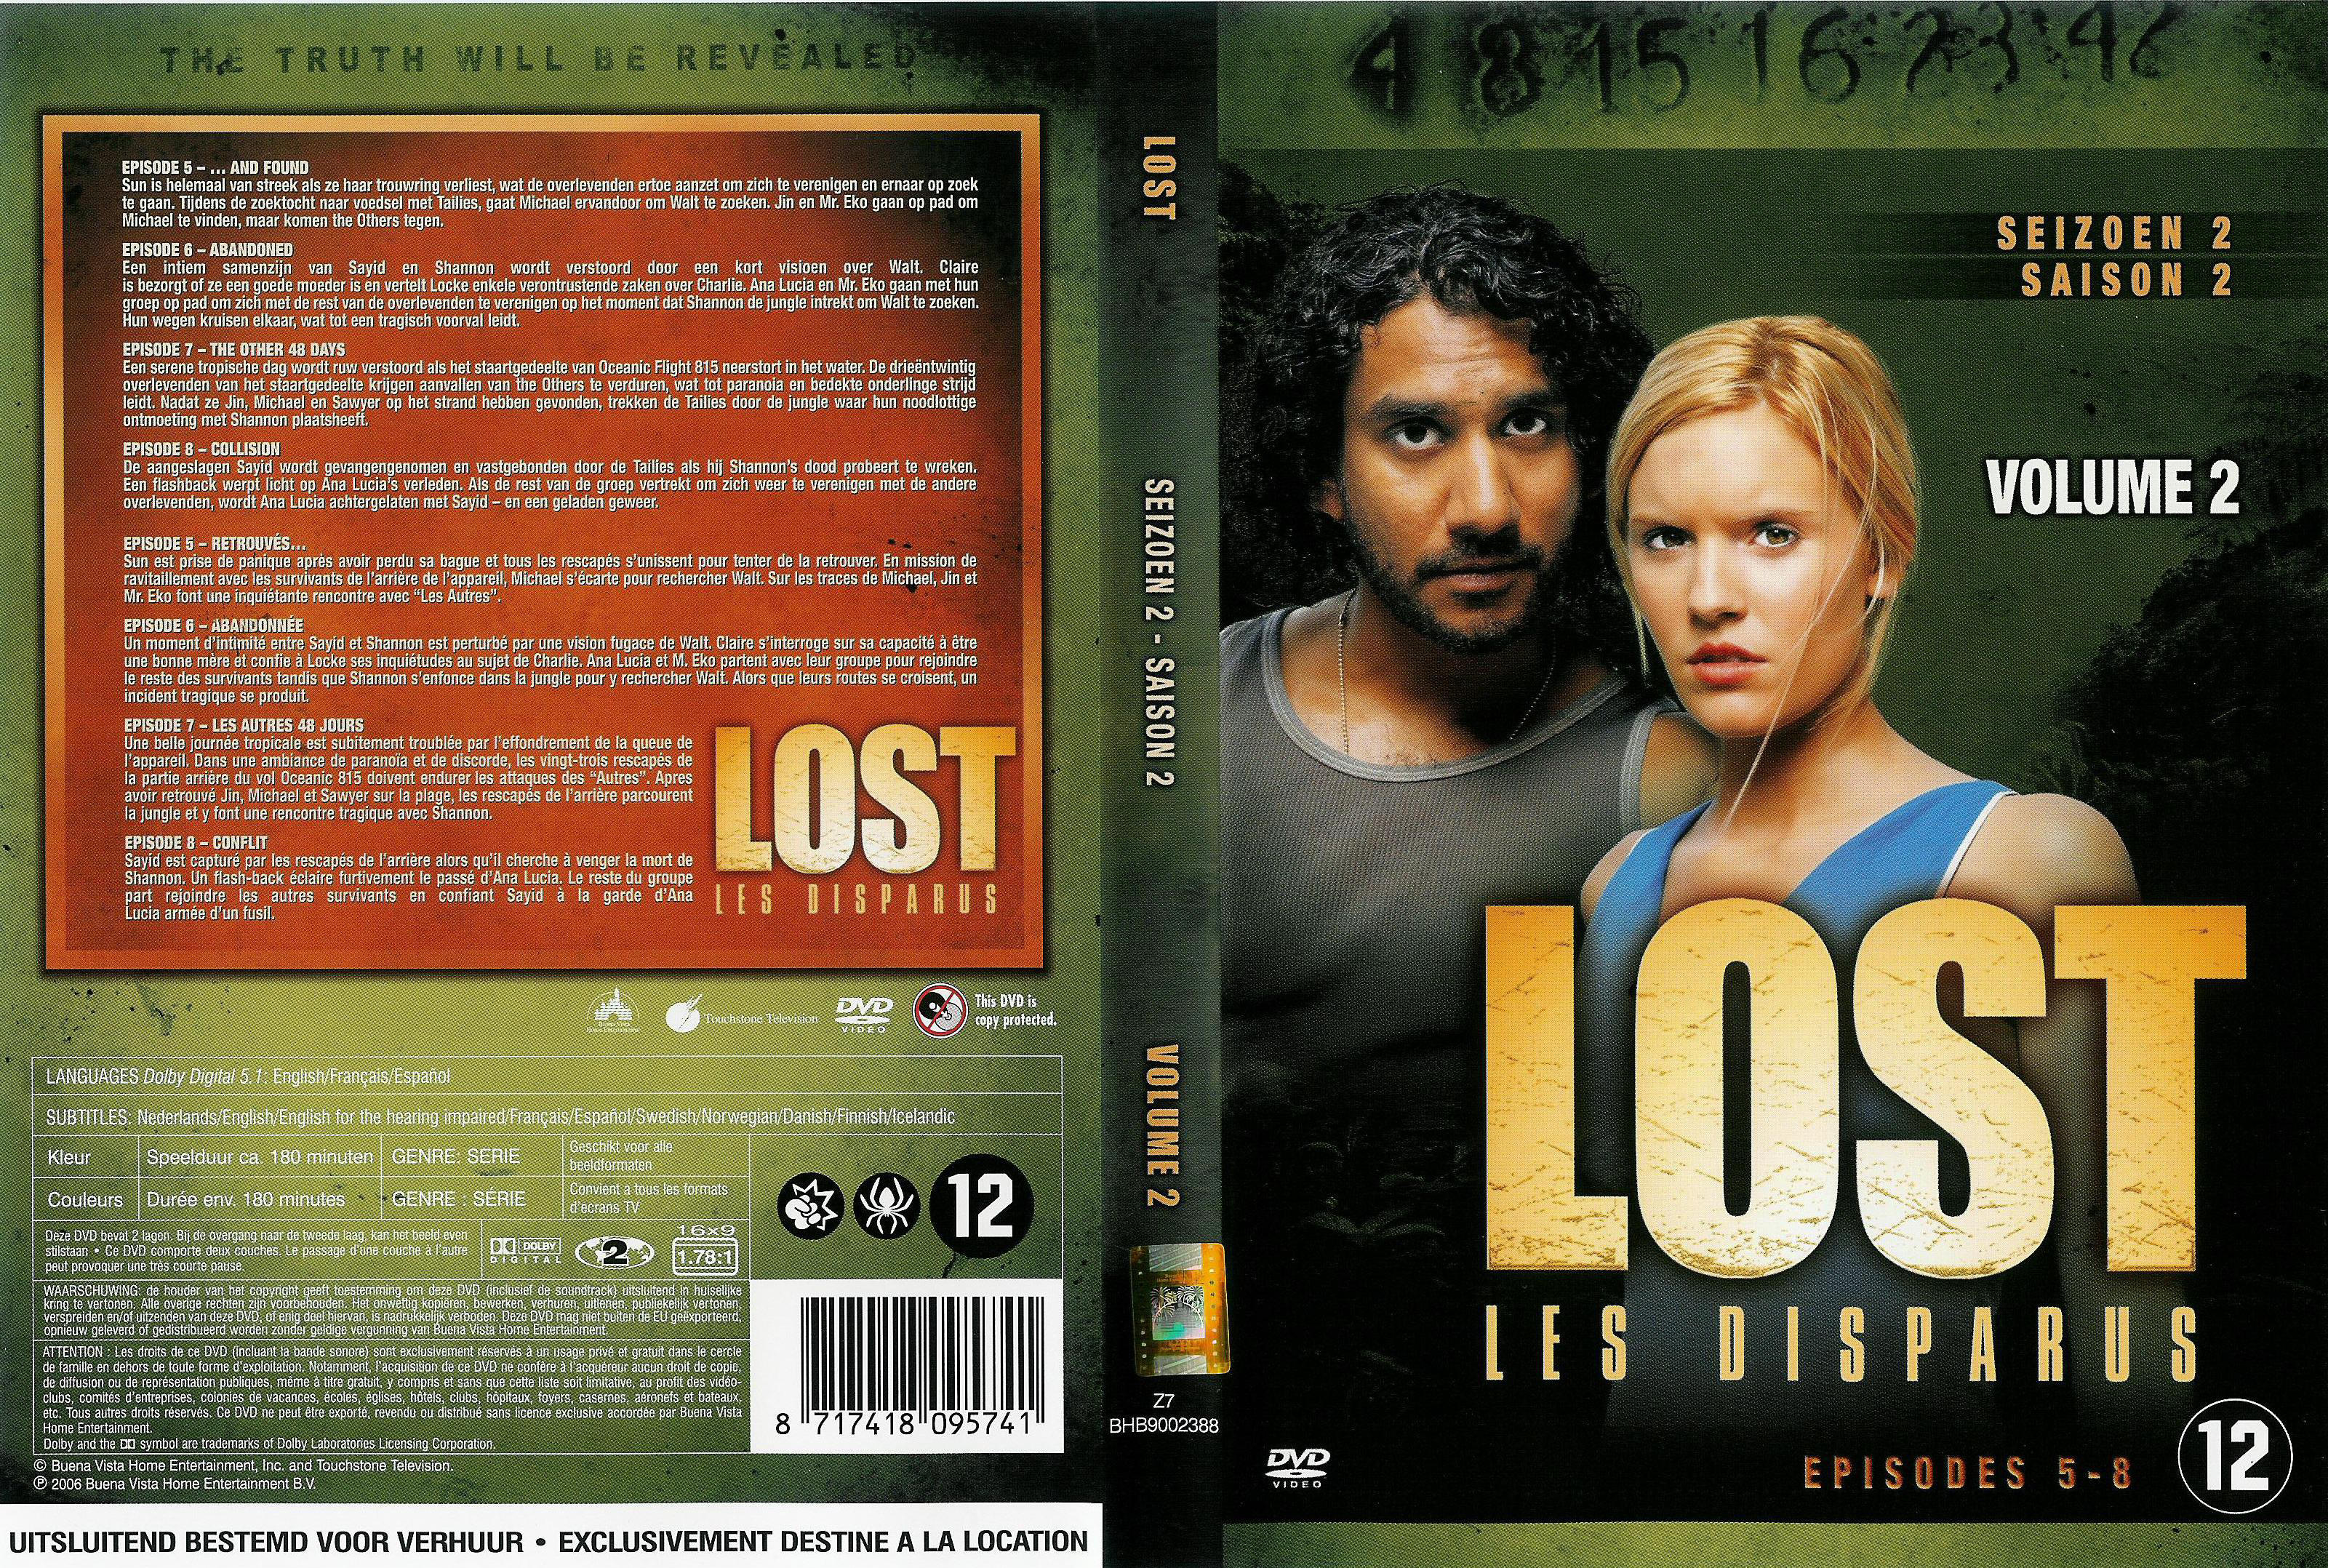 Jaquette DVD Lost Saison 2 DVD 2 v2